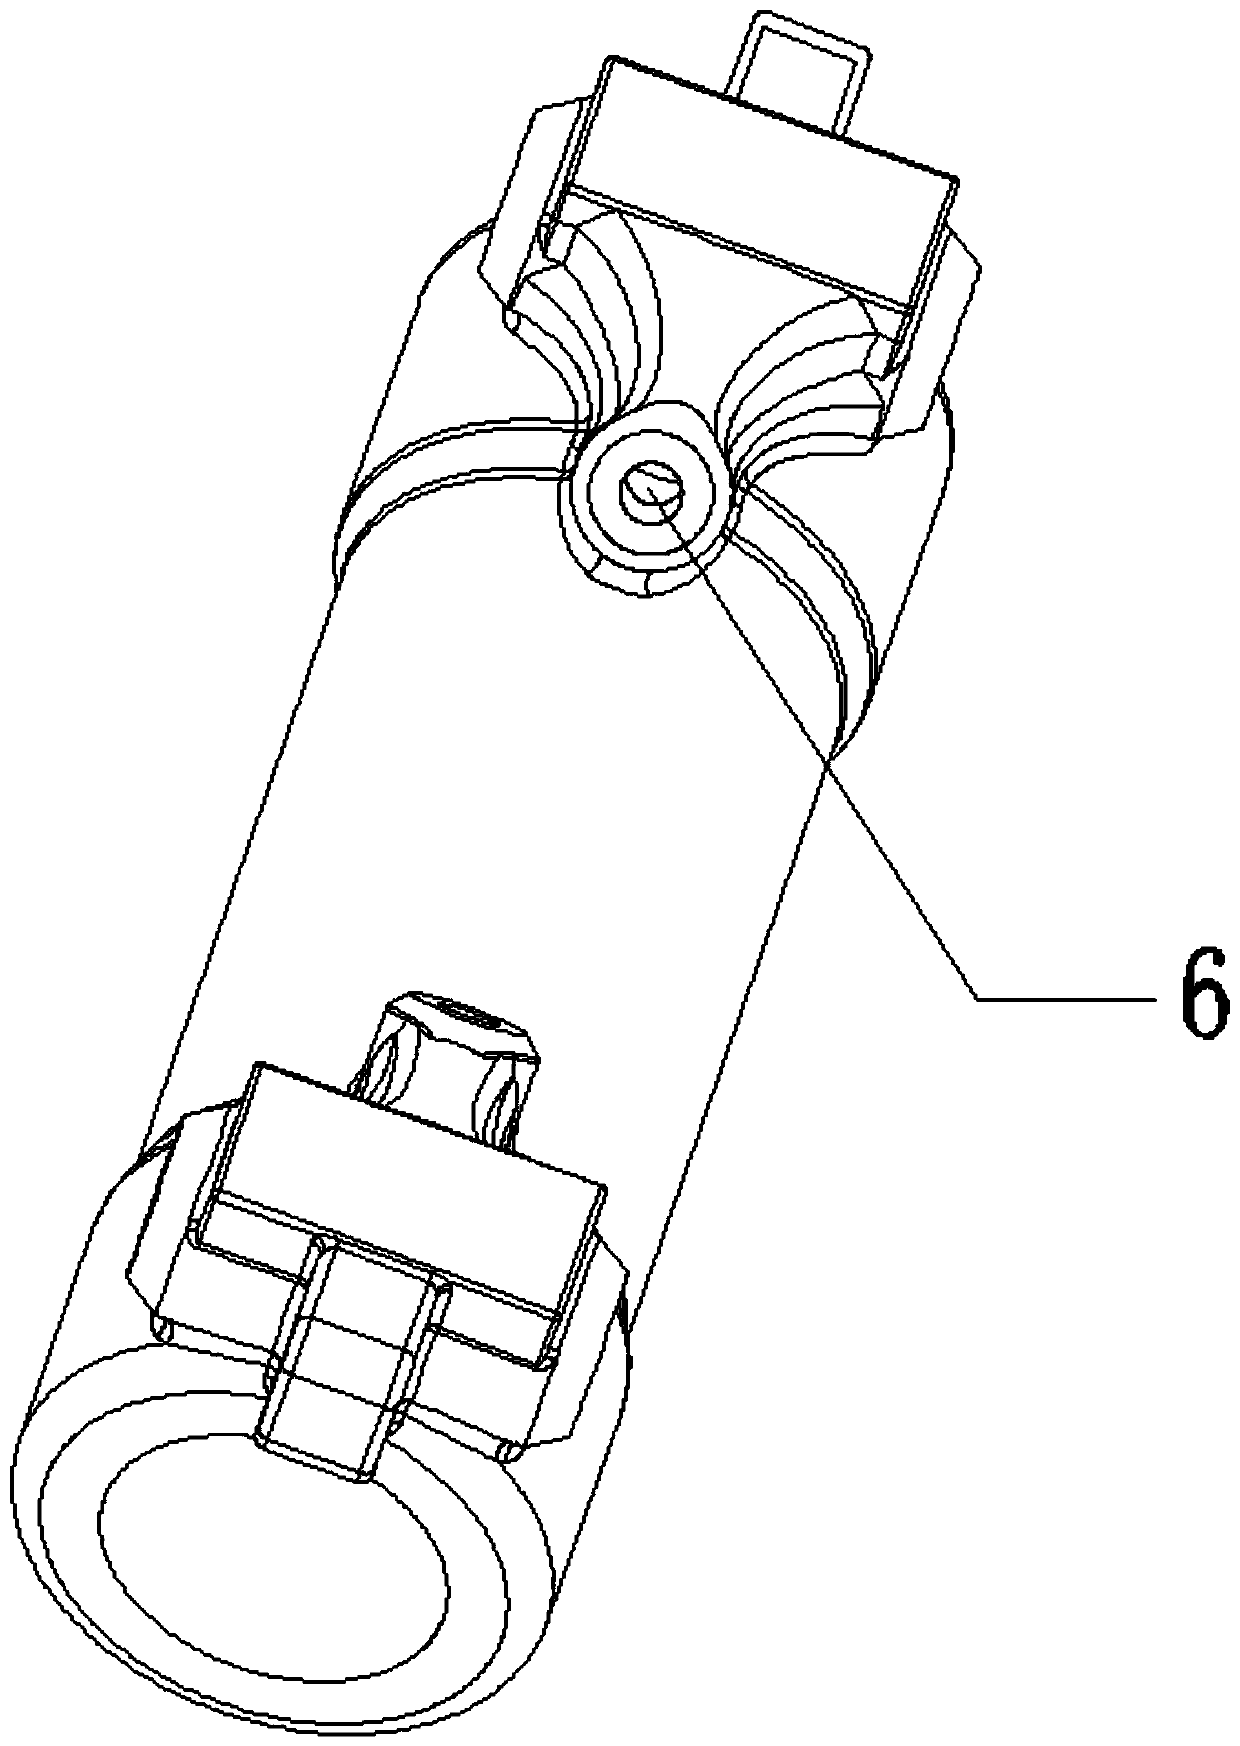 Casting system and casting method of cylinder barrel